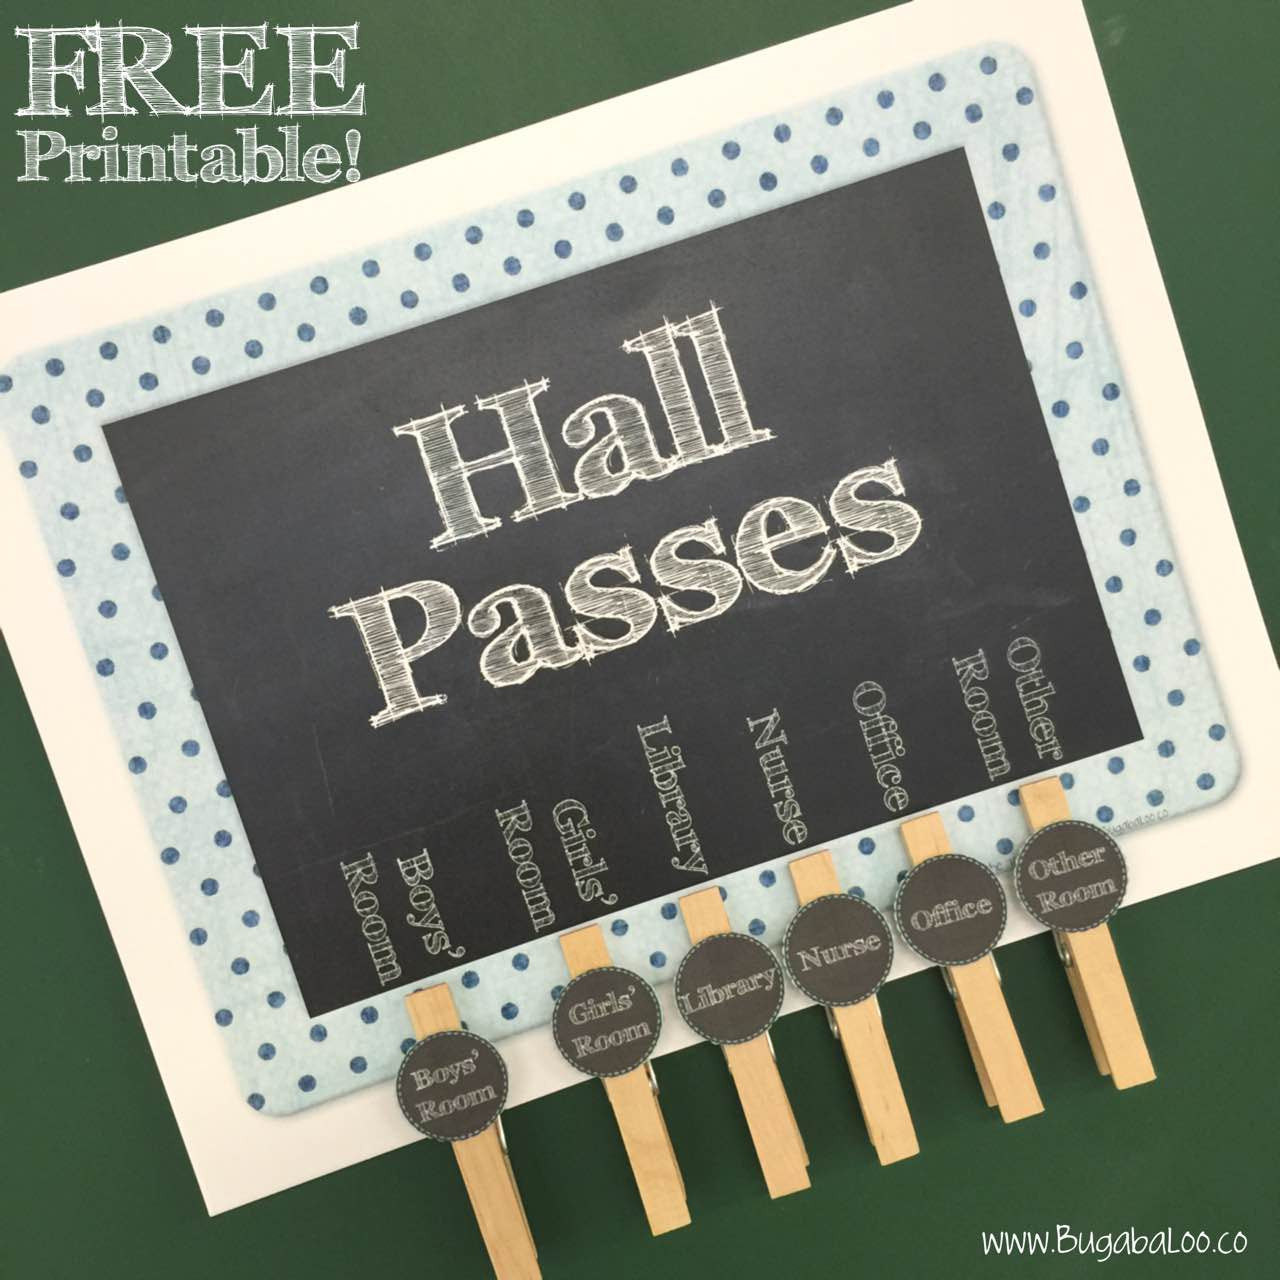 free-printable-classroom-hall-pass-sign-bugabaloo-inc